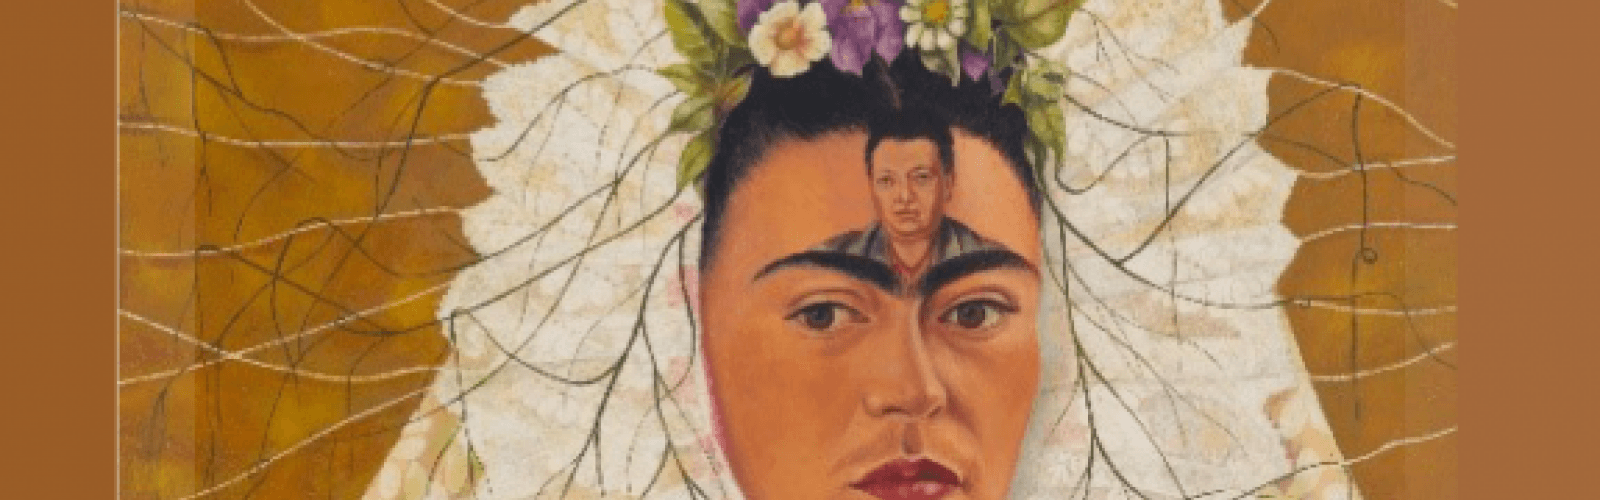 Conférence Diego Riveira & Frida Kahlo